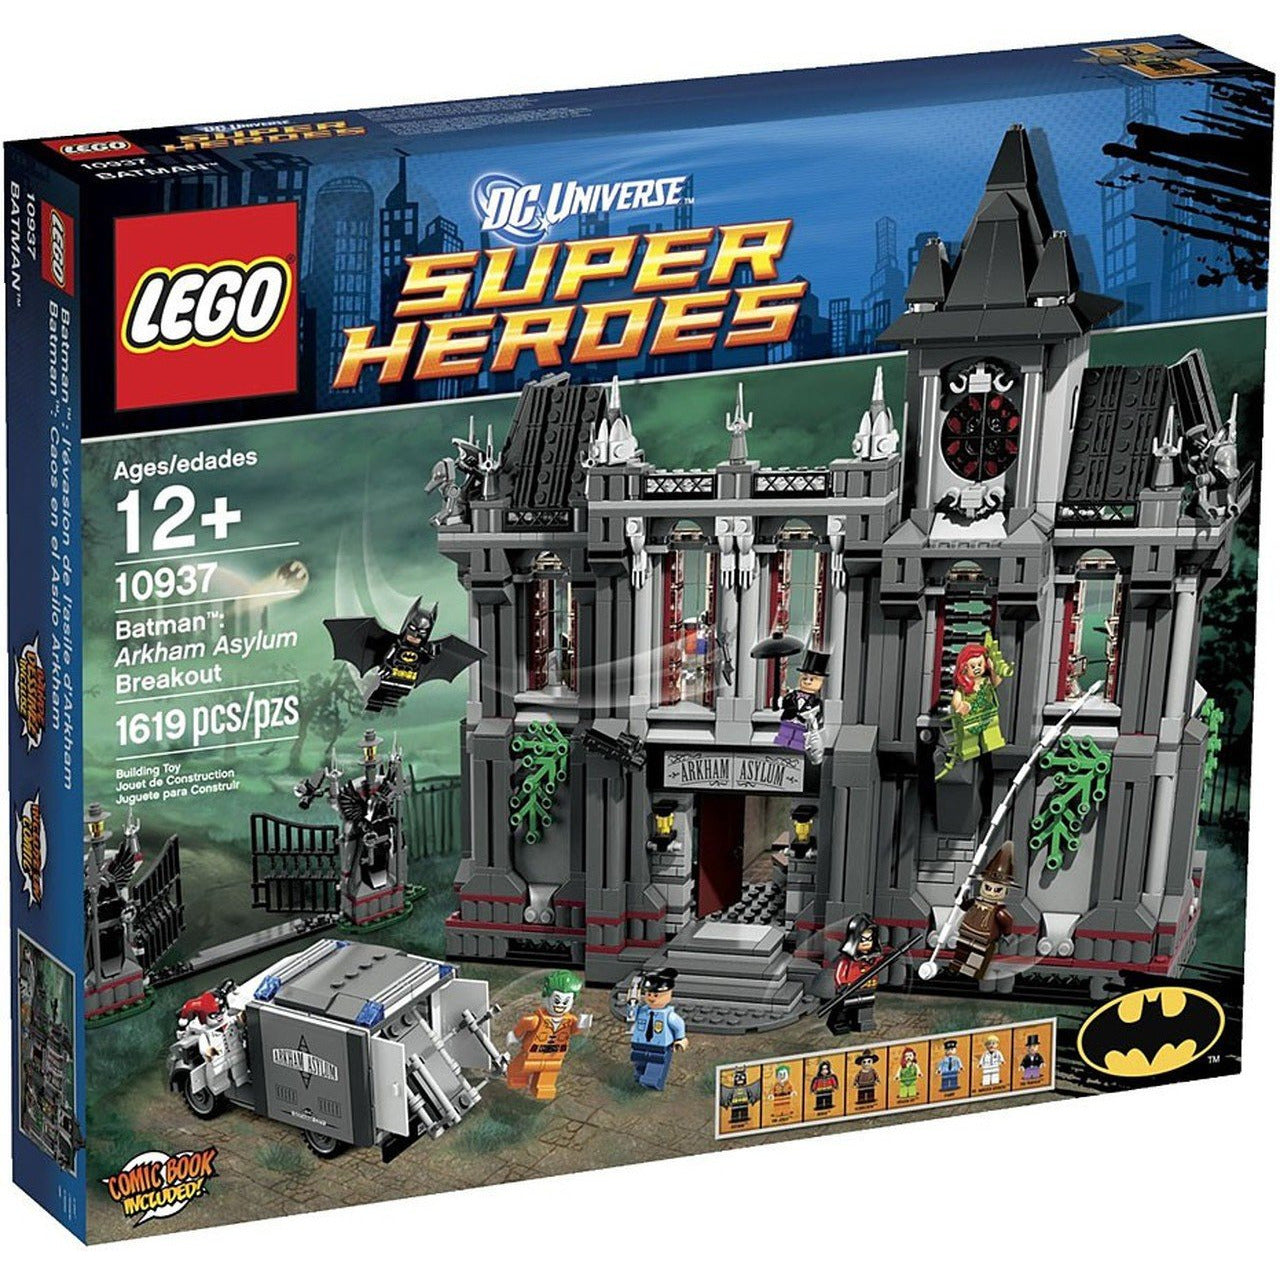 Lego DC Super Heroes: Batman Arkham Asylum Breakout 10937